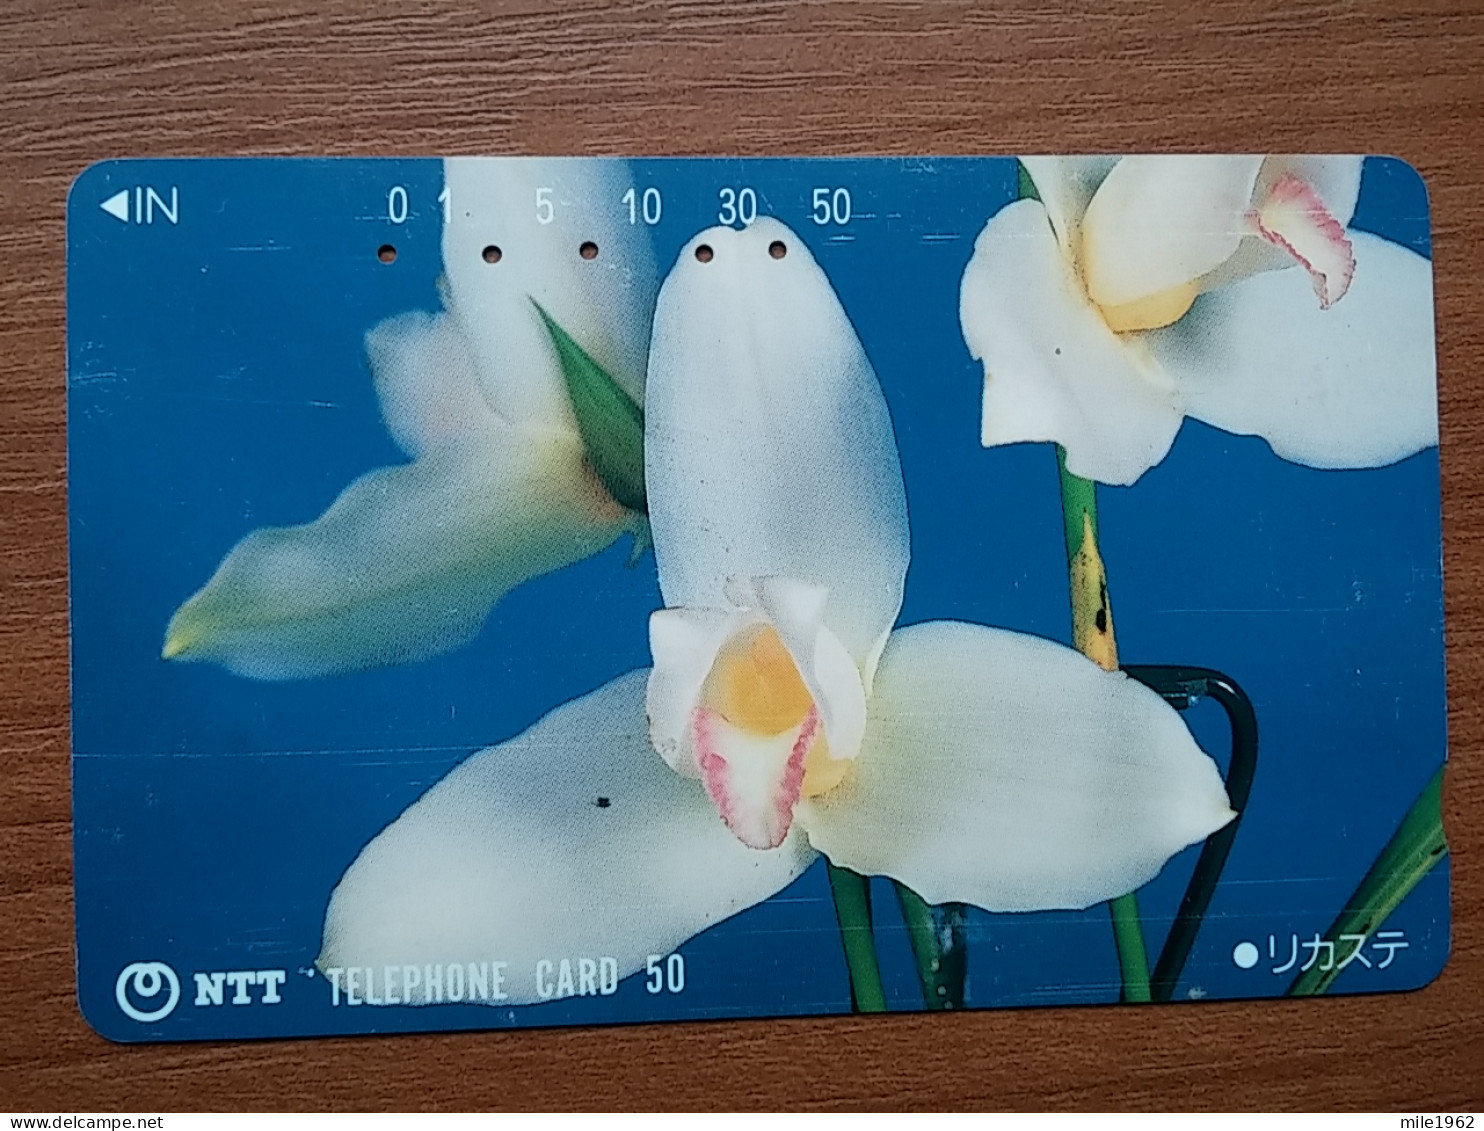 T-383 - JAPAN, Japon, Nipon, TELECARD, PHONECARD, Flower, Fleur, NTT 331-133 - Flowers